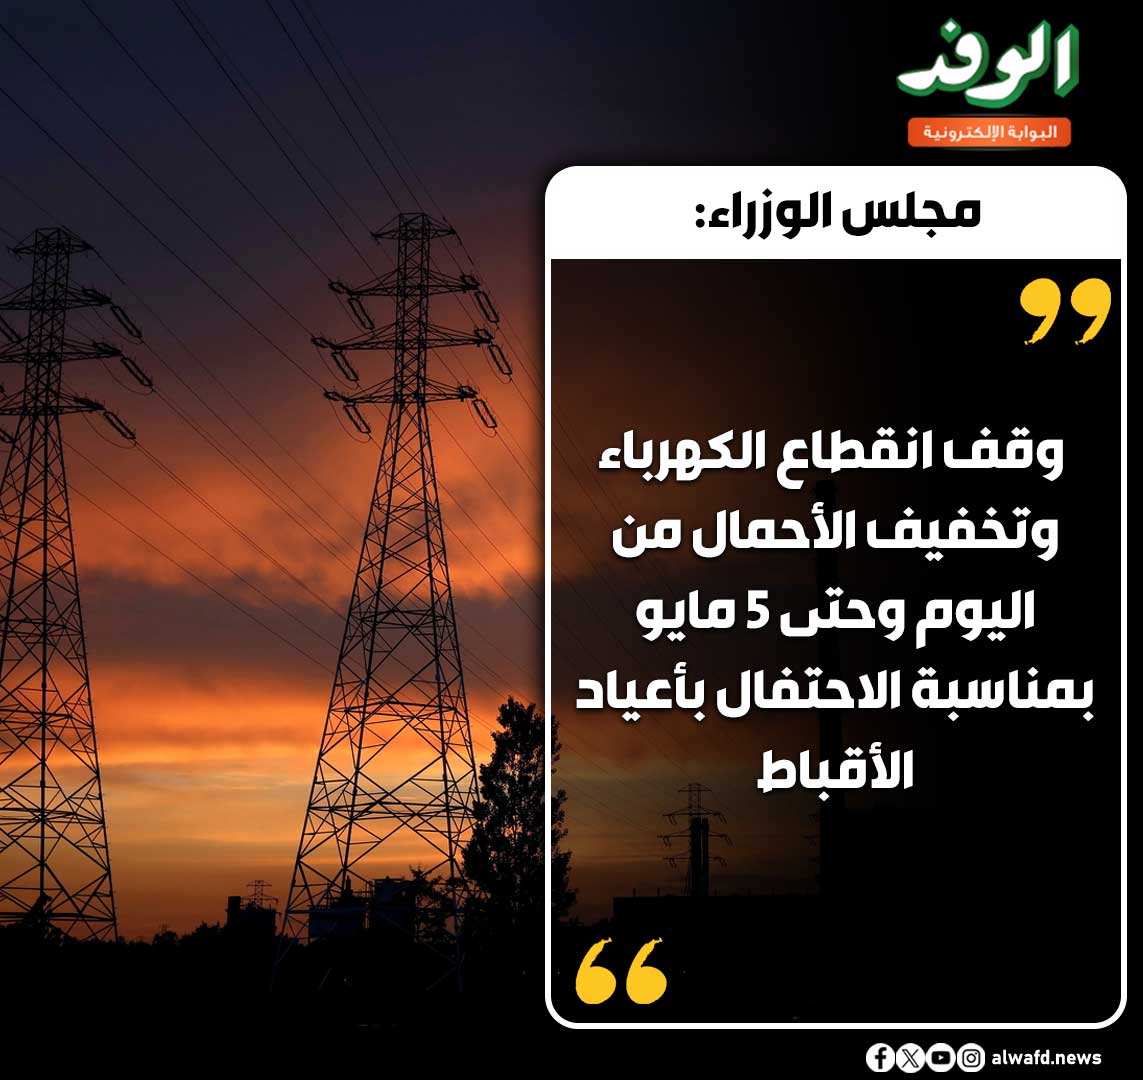 بوابة الوفد| مجلس الوزراء: وقف انقطاع الكهرباء وتخفيف الأحمال من اليوم وحتى 5 مايو بمناسبة الاحتفال بأعياد الأقباط 